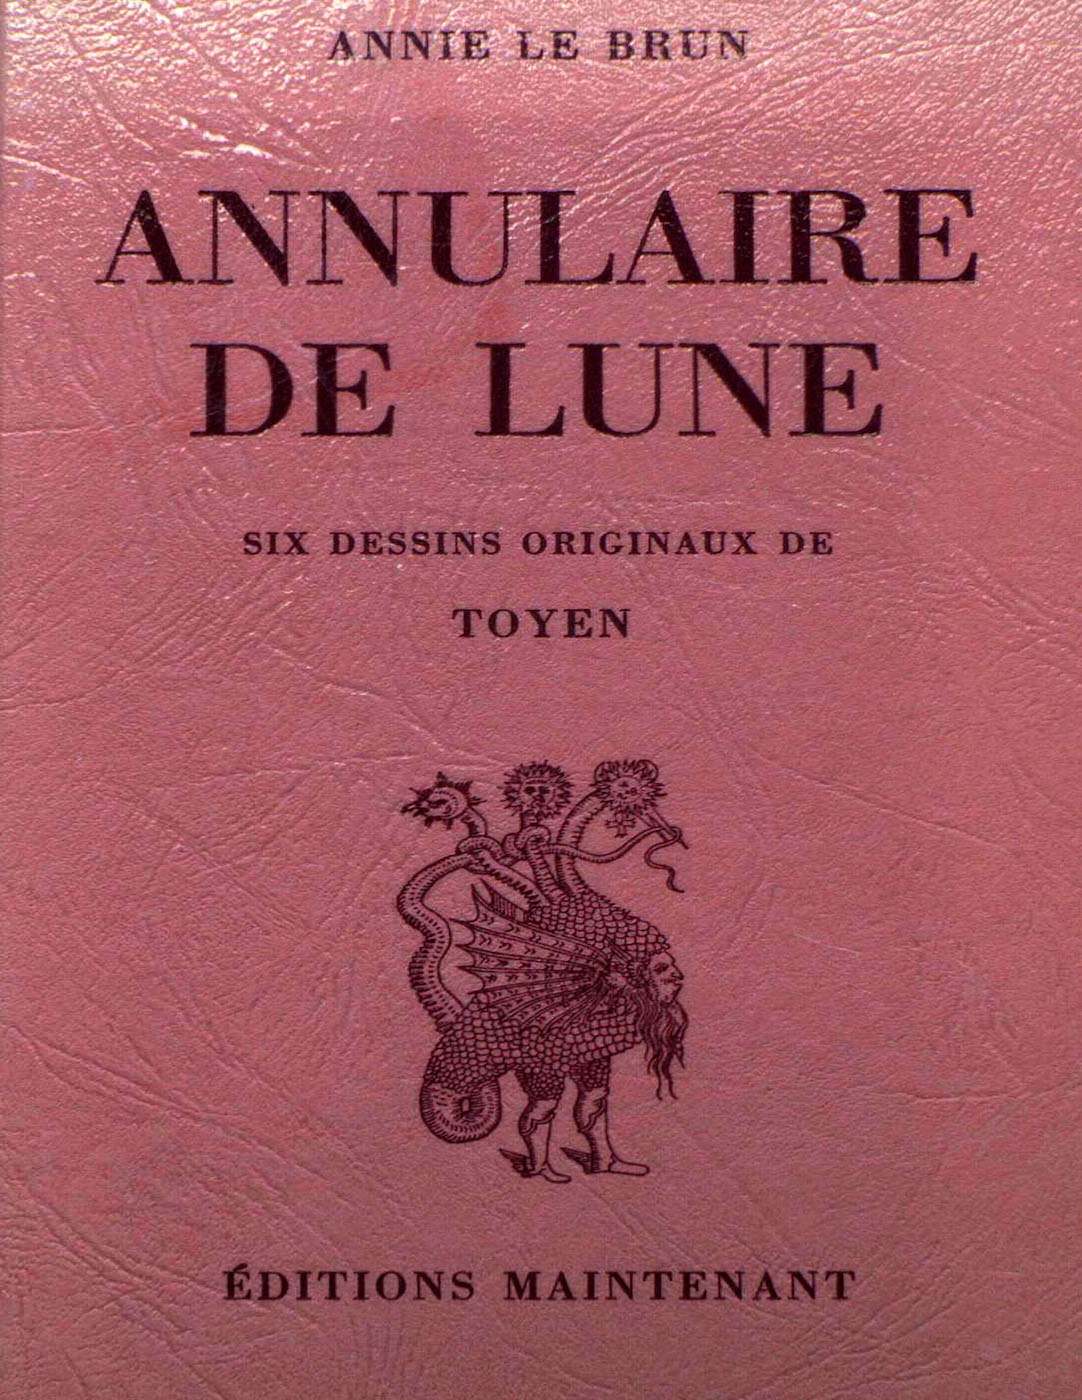 Annie Le Brun, <br /><em>Annulaire de lune</em>, 1977